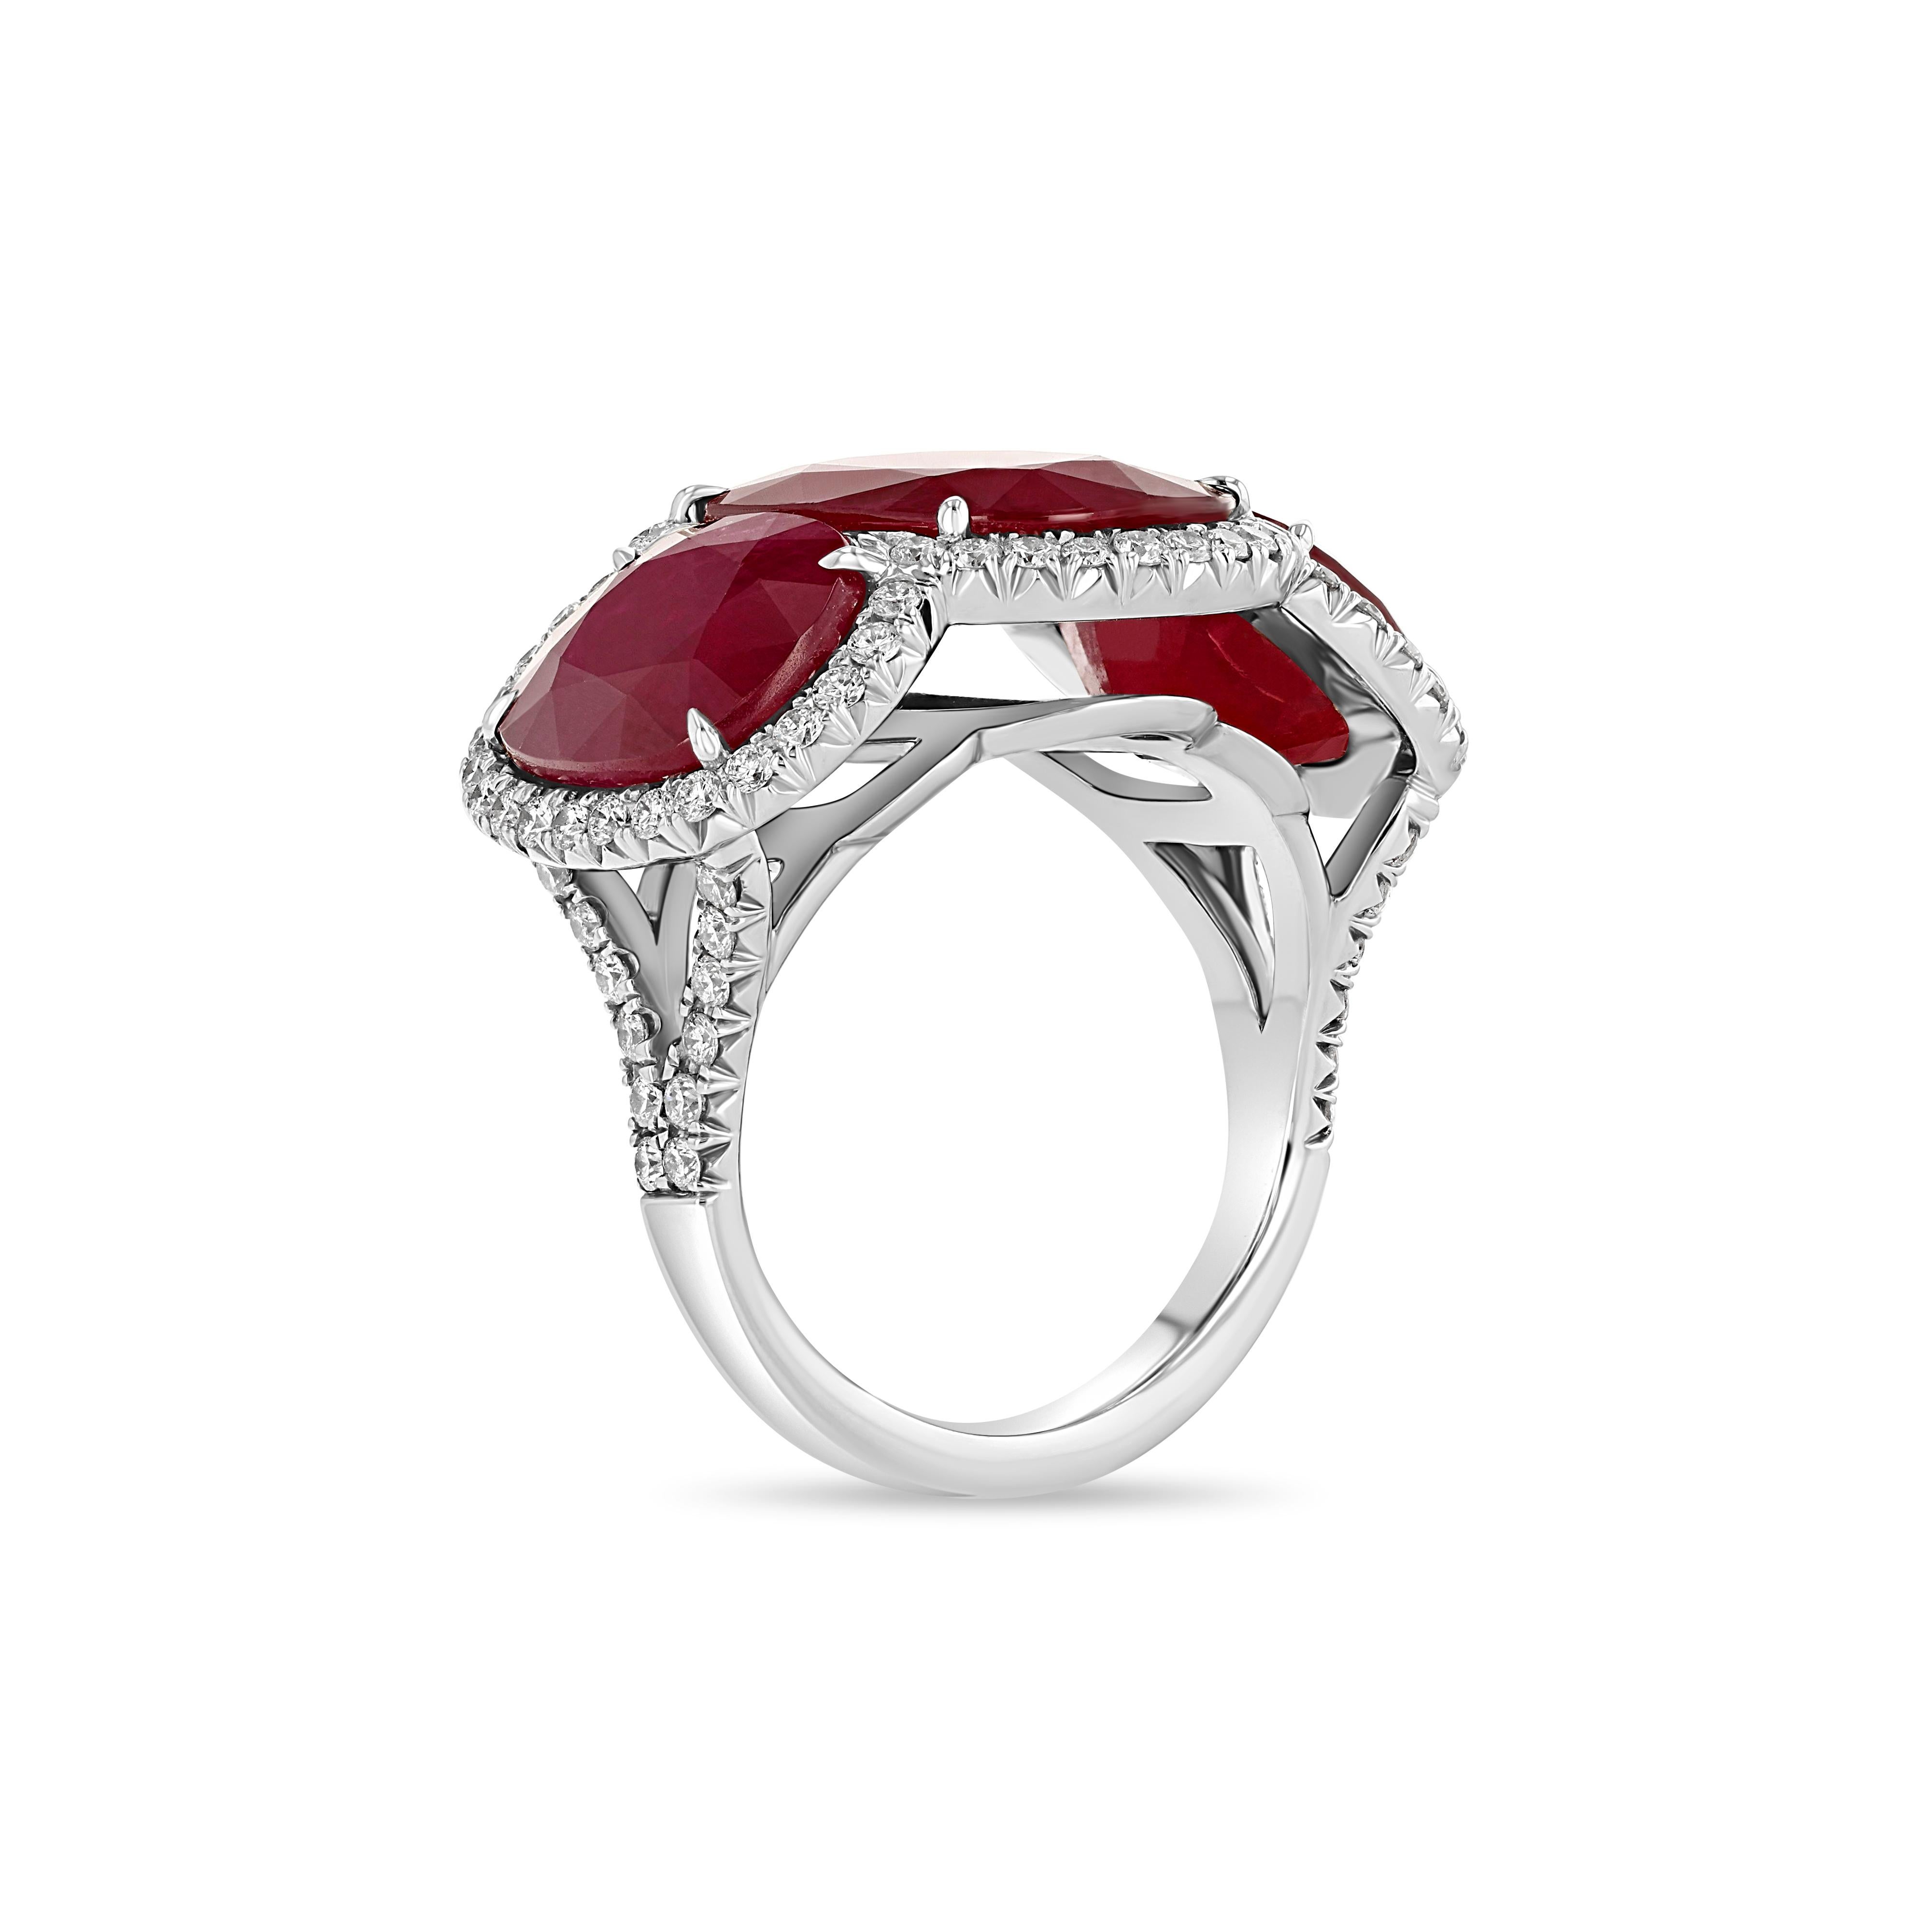 Ein eleganter Ring, bestehend aus drei Rubinen, die von mehreren Diamanten zart akzentuiert werden.
 
Gesamtgewicht : Ca. 17.00 Ct
Farbe: Intensives Rot
Form/ Stil : Oval/ gemischter Schliff
Transparenz : Durchsichtig 

Abmessungen: Von ca. 10,54 x